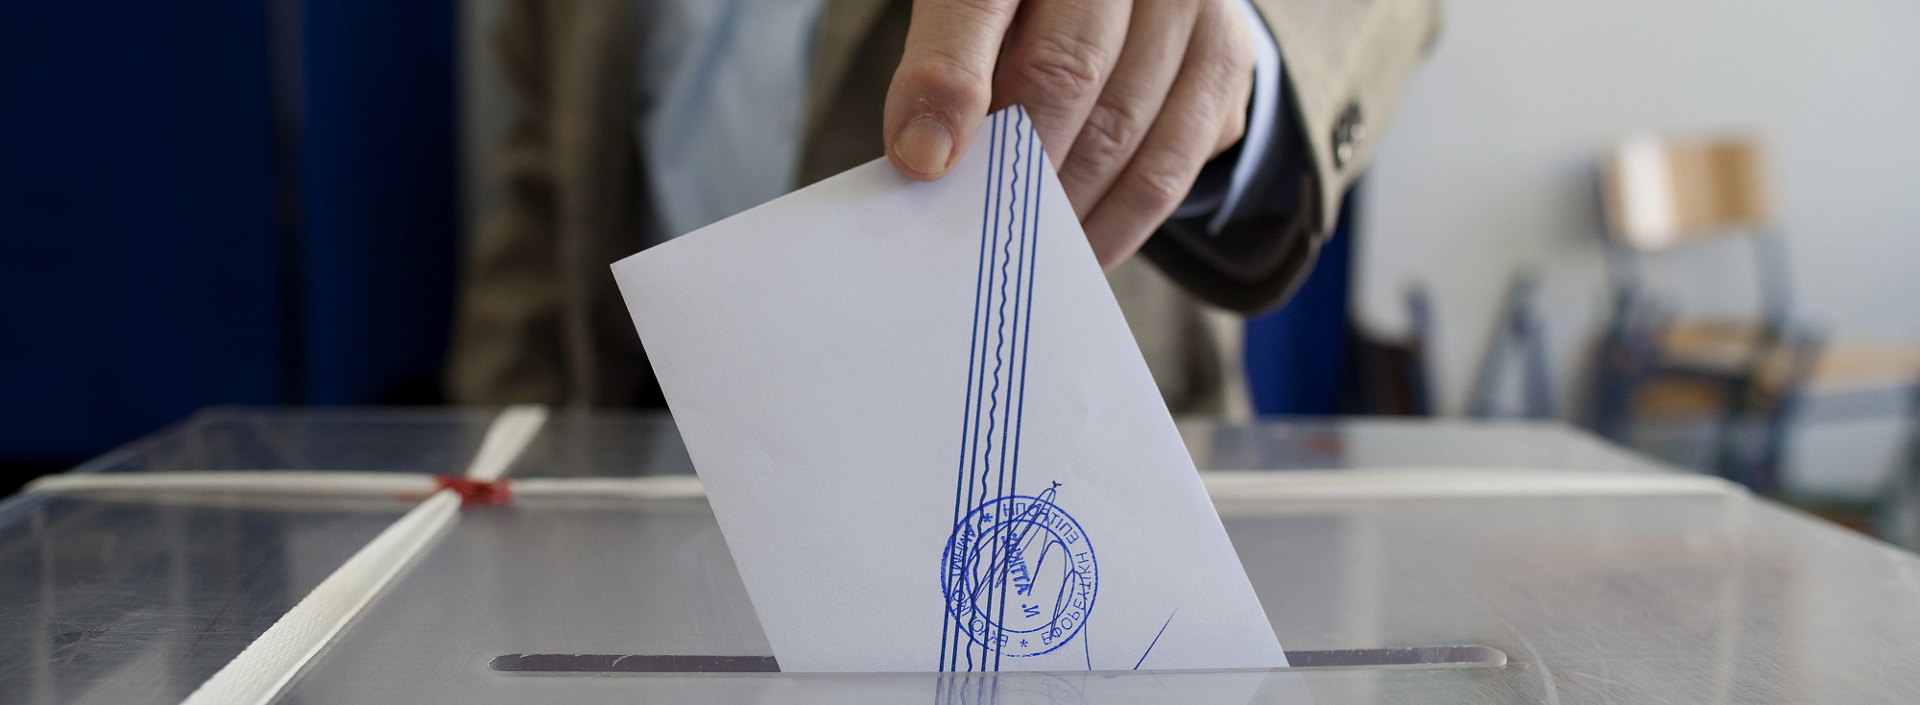 Εθνικές εκλογές 2019: Η κόρη του Γ.Ρίτσου στο ψηφοδέλτιο Επικρατείας του ΚΚΕ